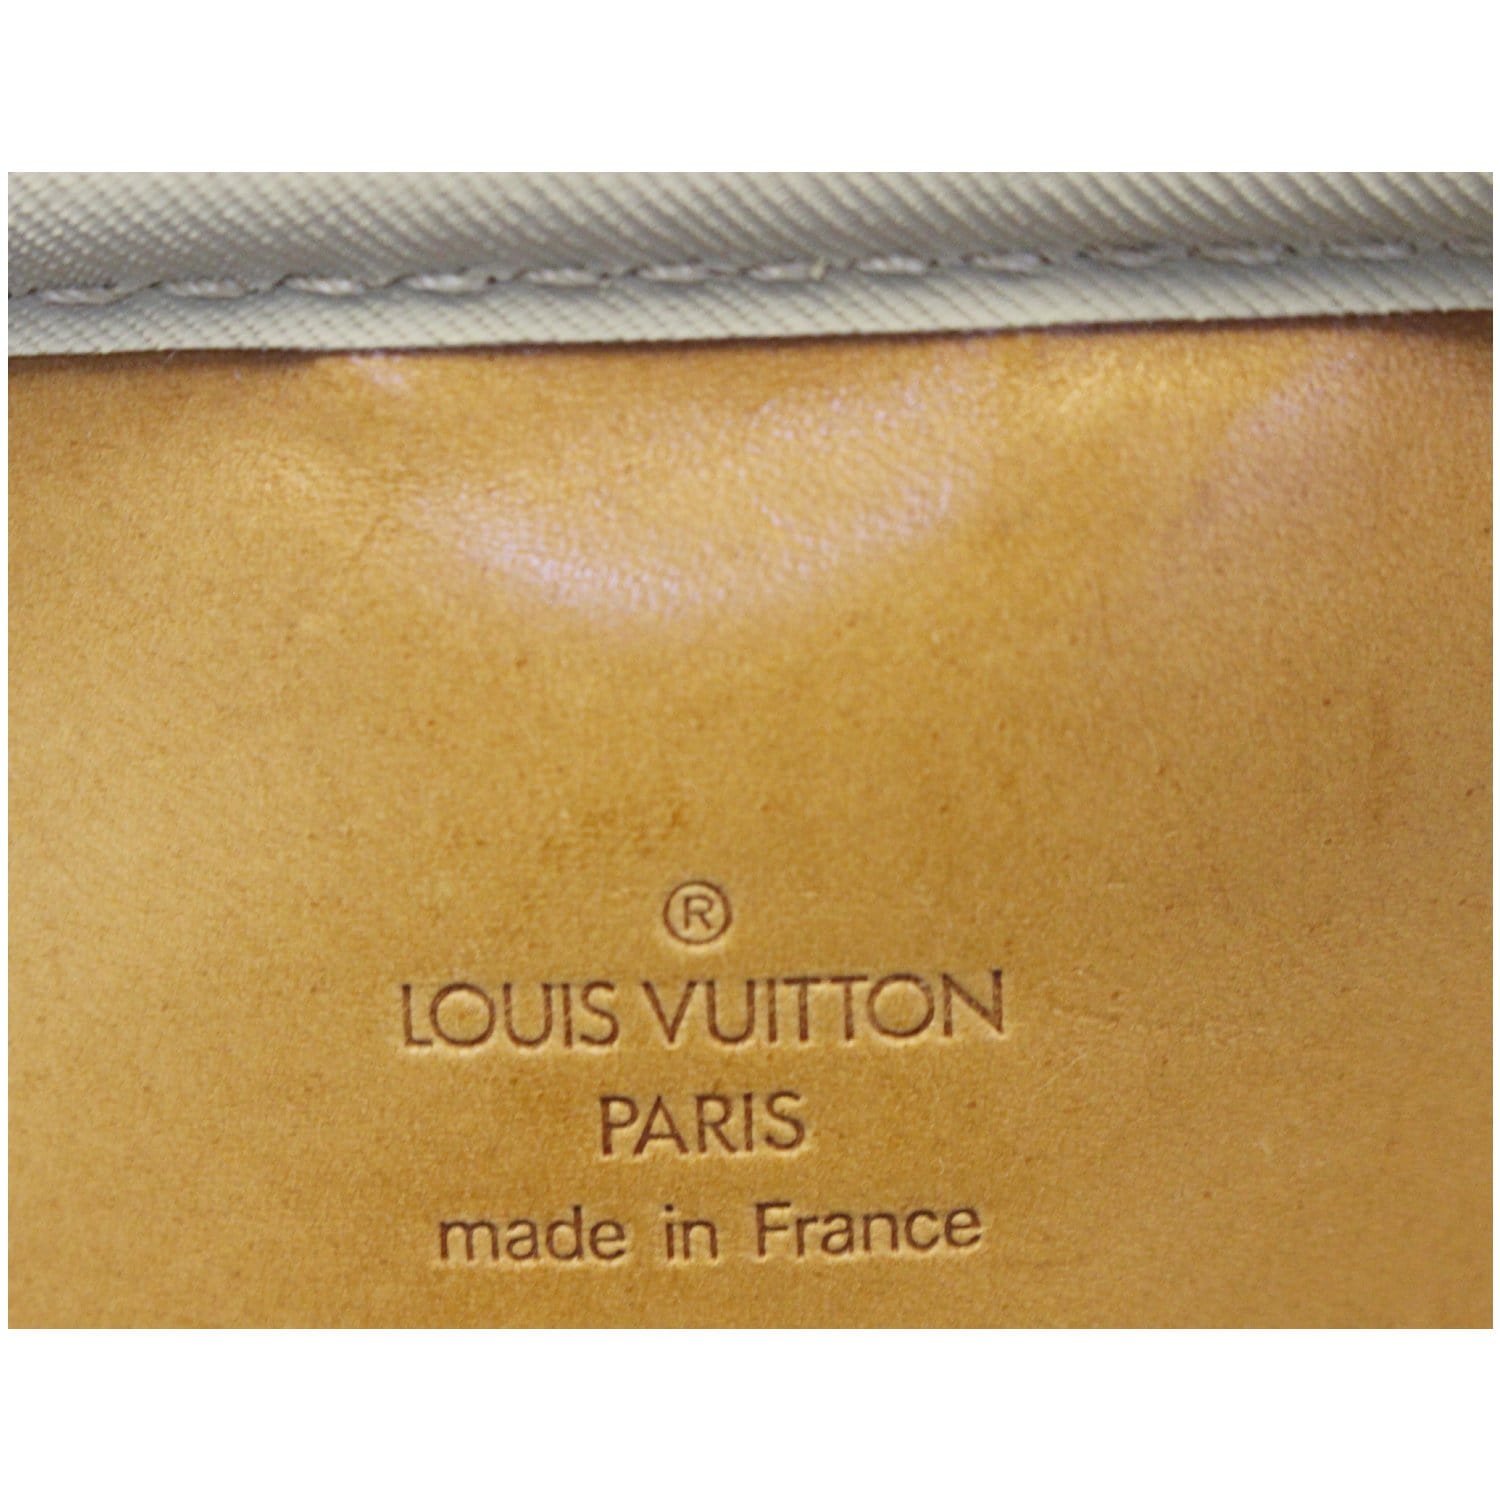 Shop Louis Vuitton MONOGRAM Louis Vuitton SIRIUS 55 by Bellaris